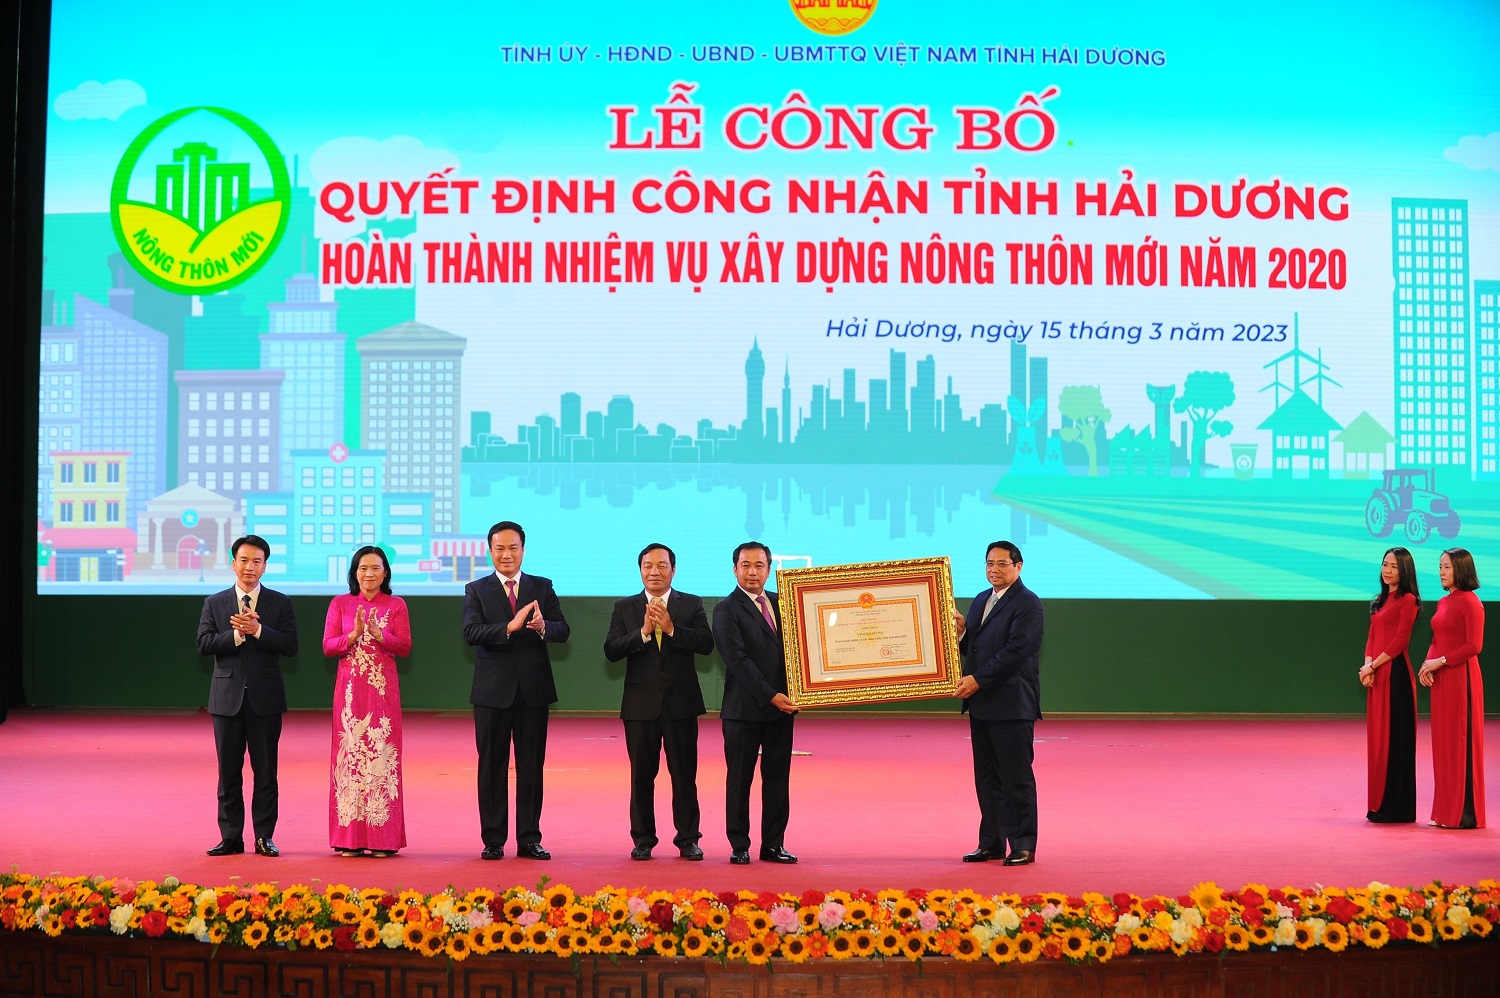 Thủ tướng Chính phủ Phạm Minh Chính trao quyết định cho tỉnh Hải Dương